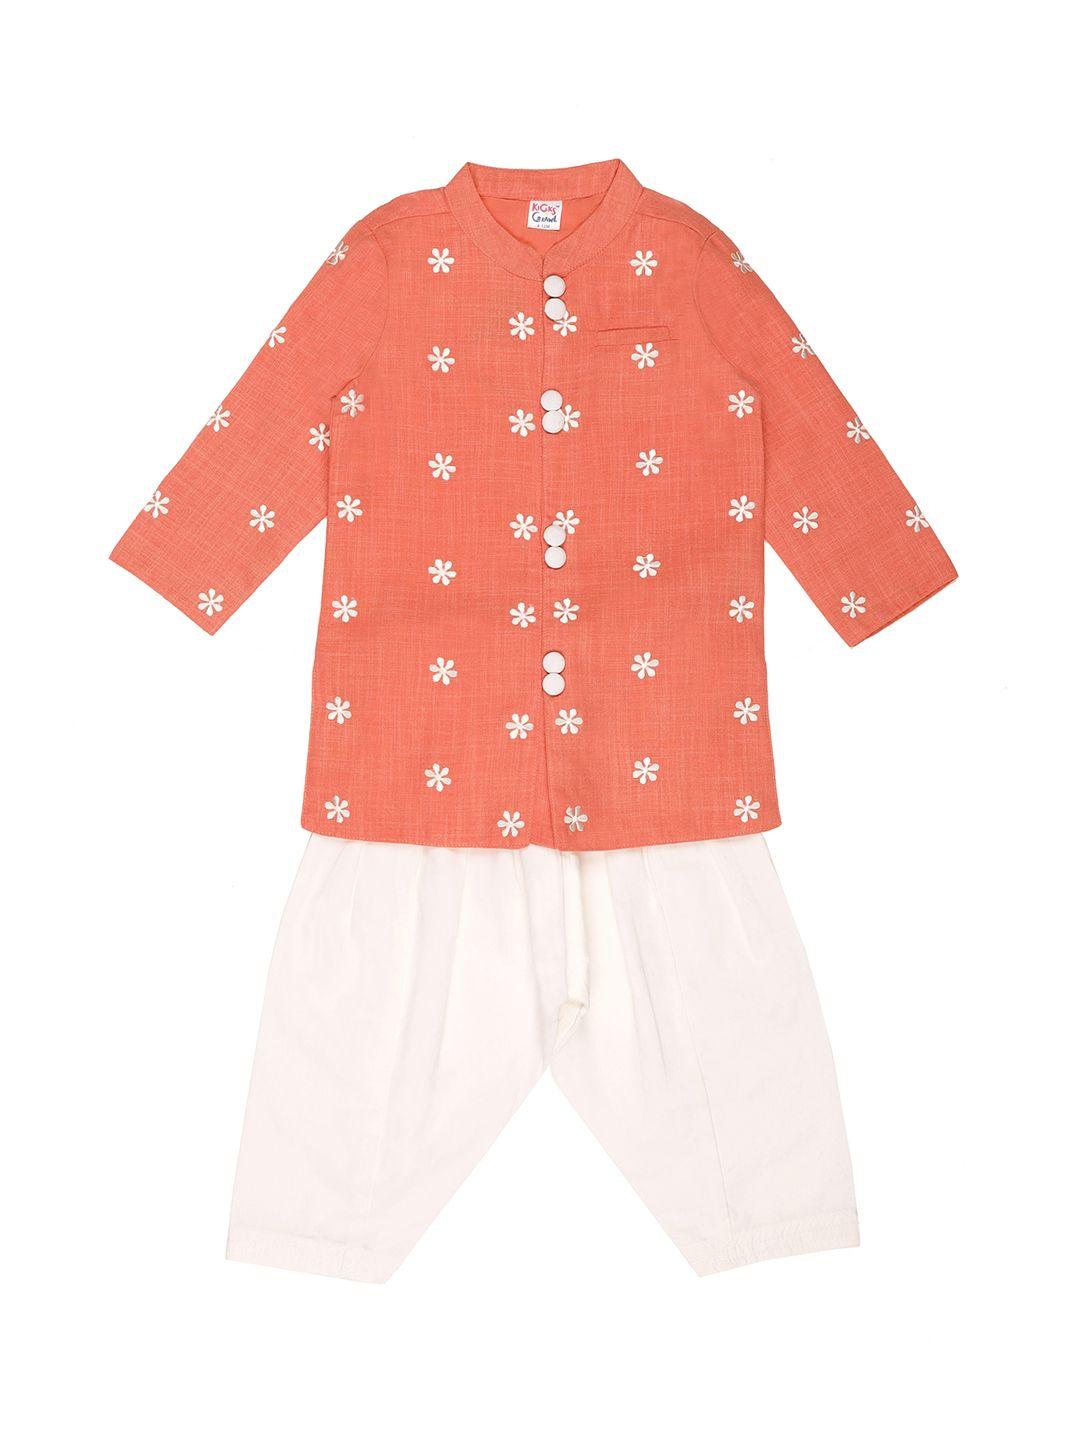 kicks & crawl boys coral orange & off-white embroidered kurta with pyjamas